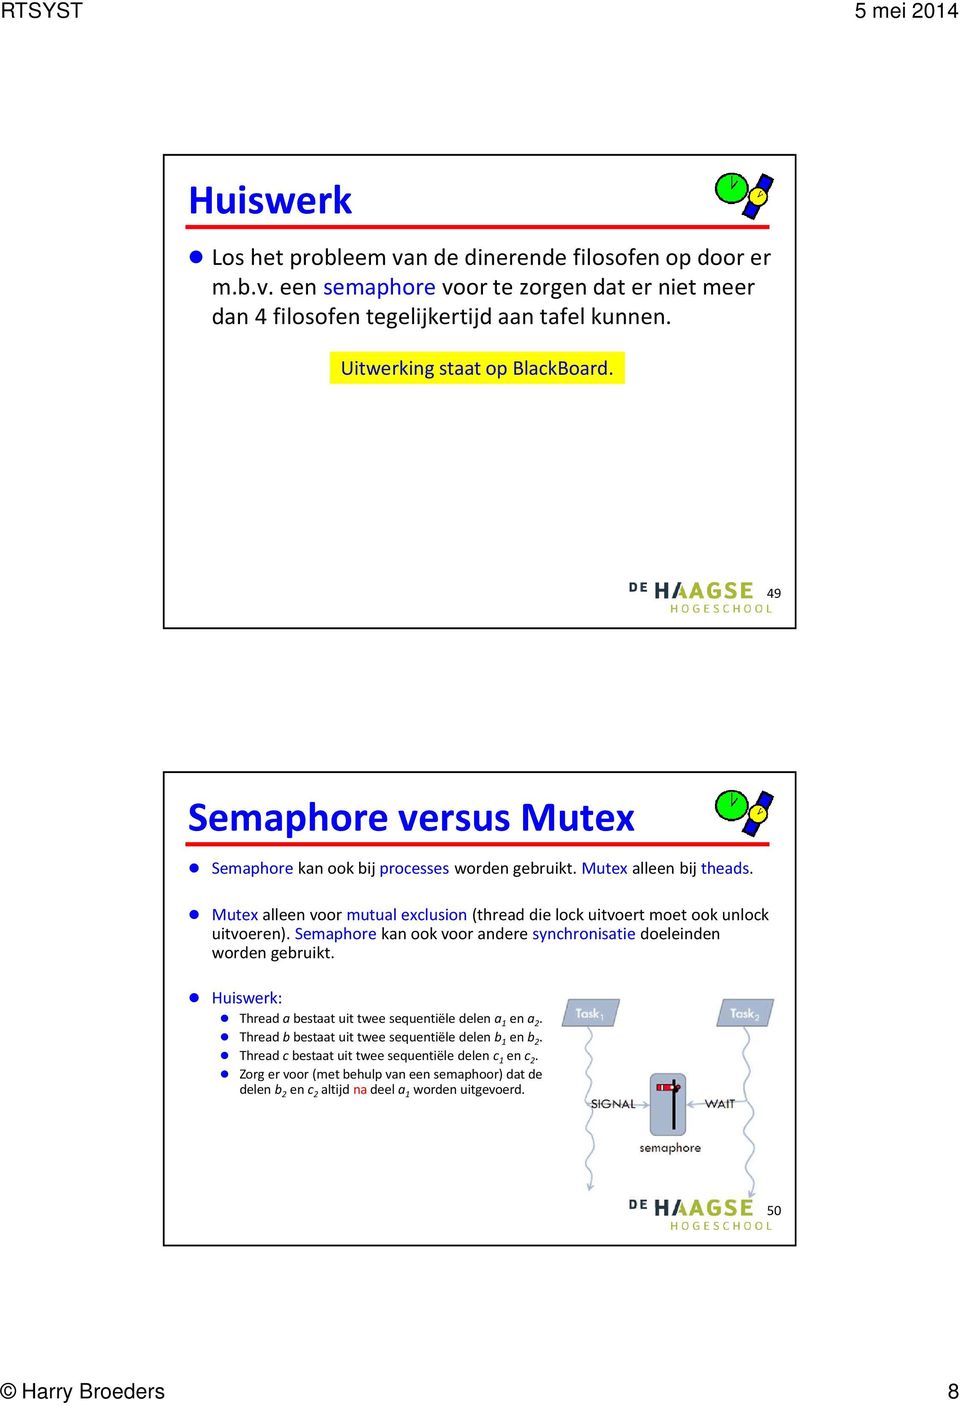 Mutex alleen voor mutual exclusion (thread die lock uitvoert moet ook unlock uitvoeren). Semaphorekan ook voor andere synchronisatiedoeleinden worden gebruikt.